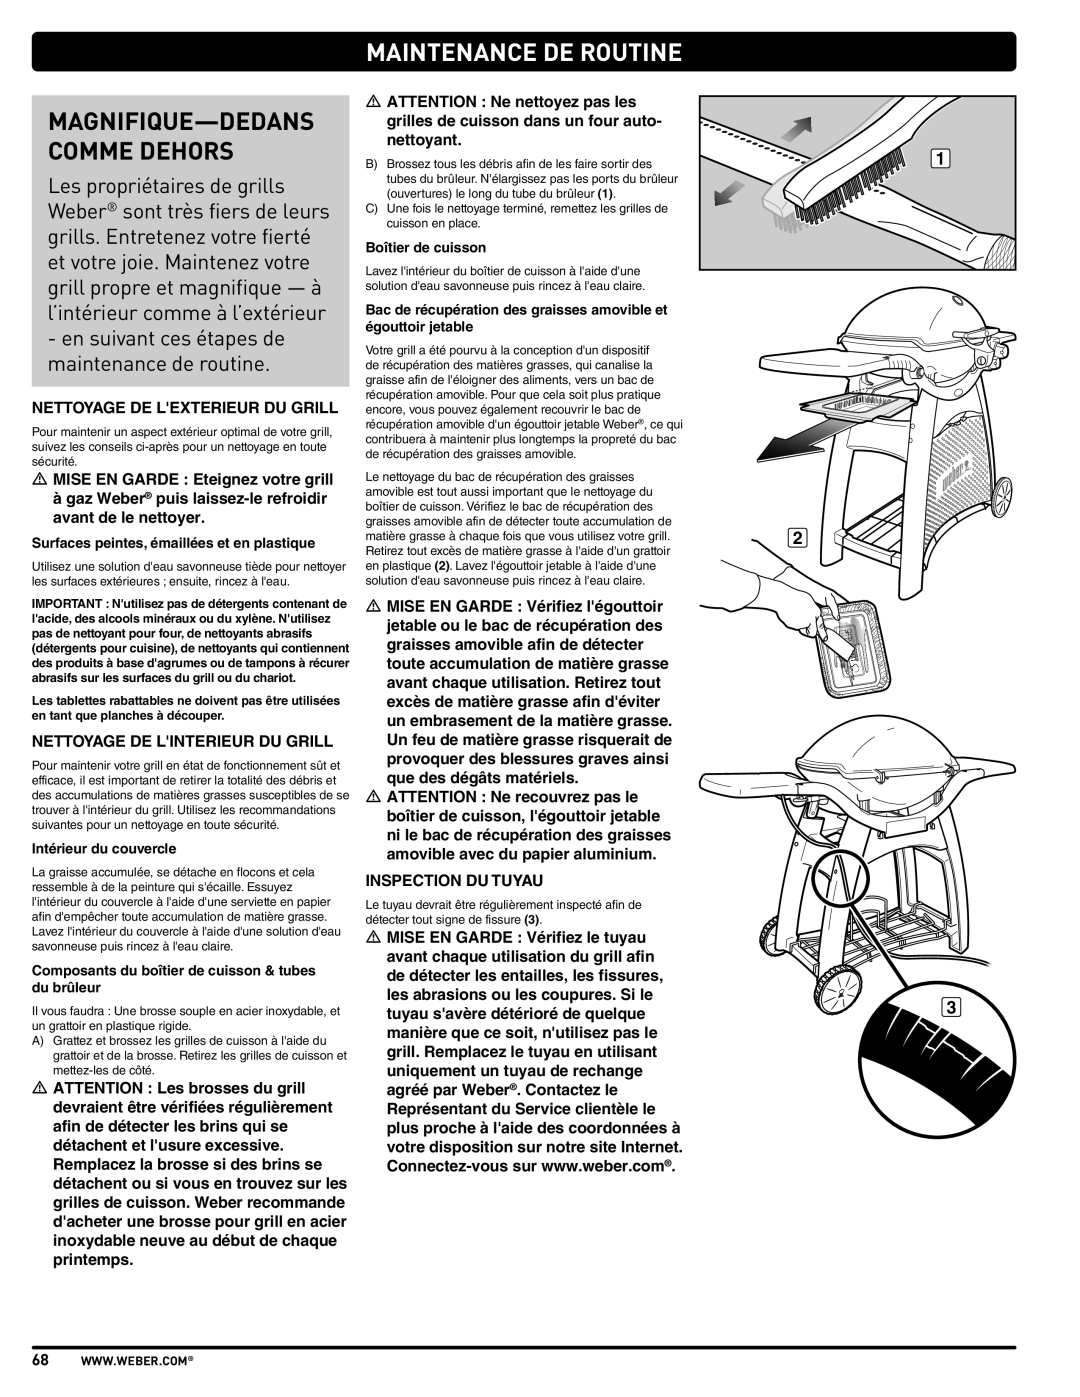 Weber 57515 manual Maintenance De Routine, Magnifique-Dedans Comme Dehors, en suivant ces étapes de maintenance de routine 